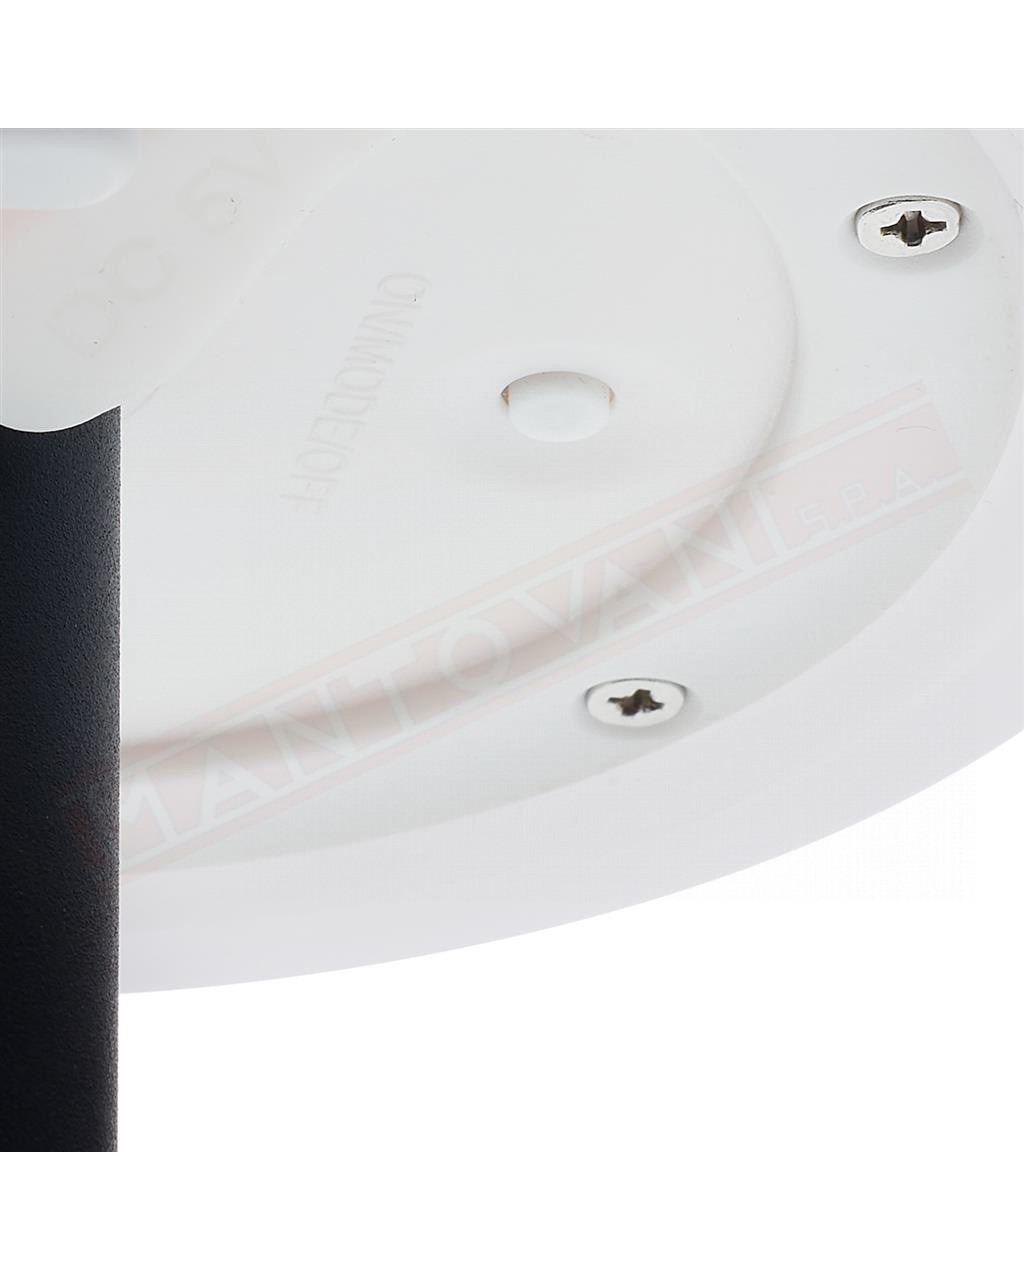 Smartwares lampada led 0.1w 50 lumen da tavolo a batteria ricaricabile con pannello fotovoltaico integrato nascosto 3000k